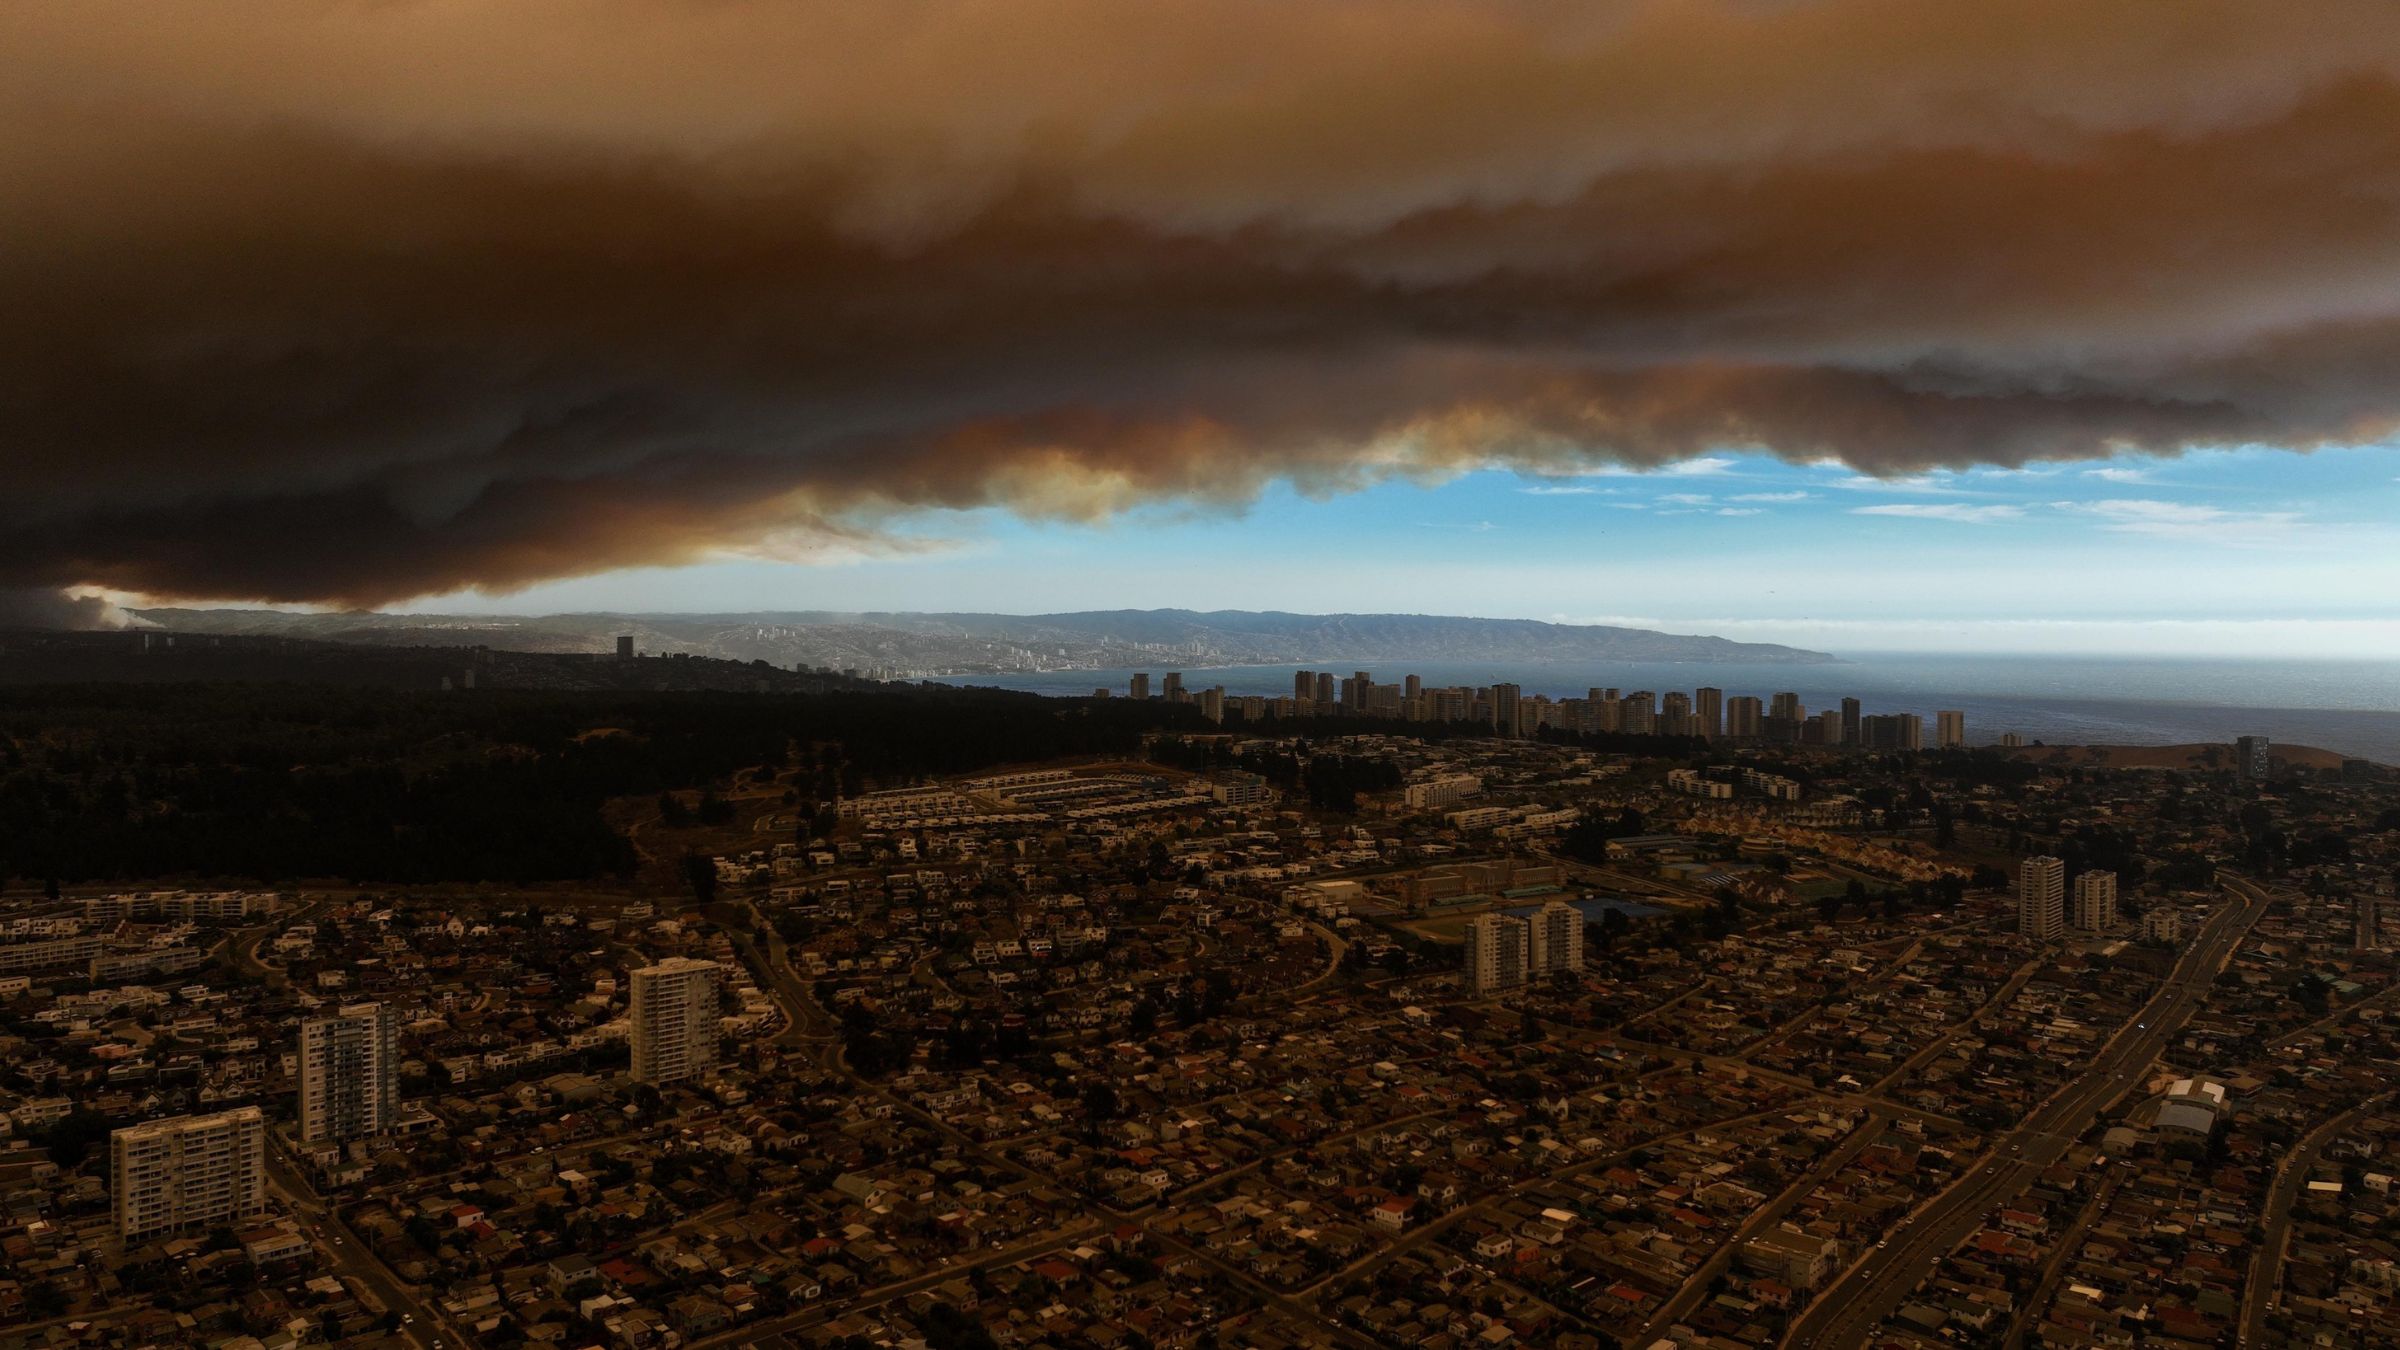 Paisajes desoladores: Crisis, seguridad humana e incendios